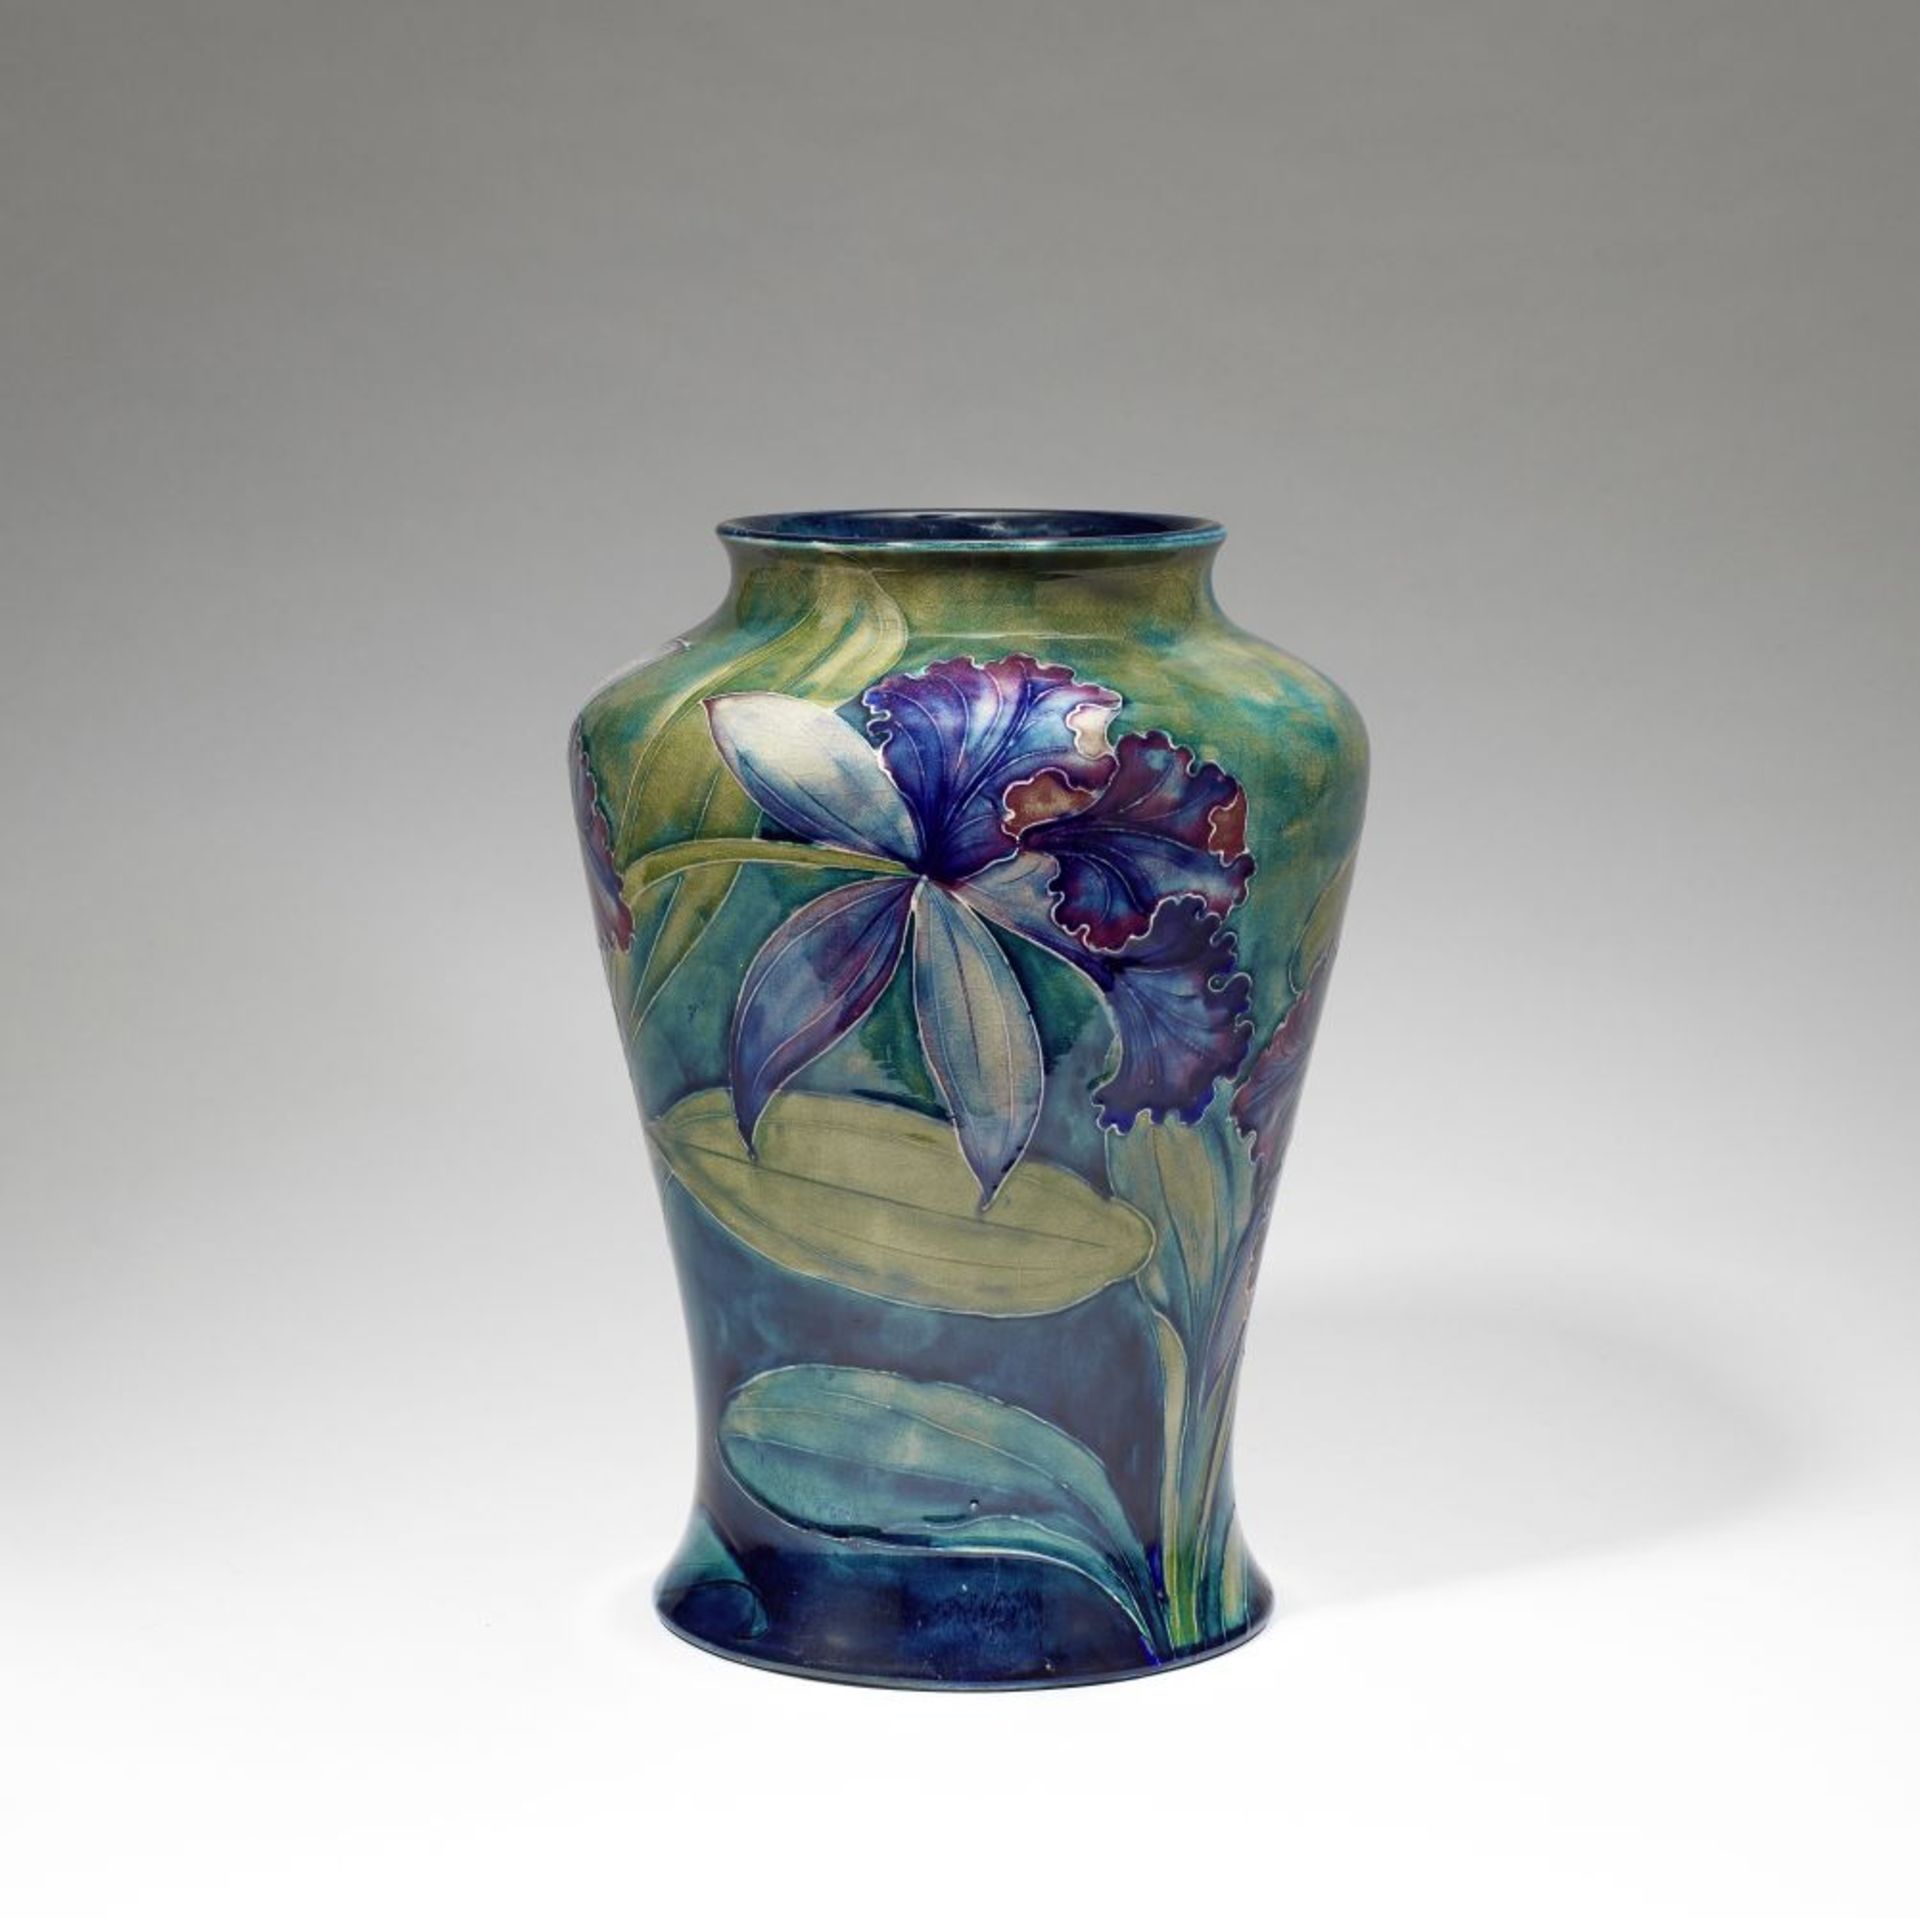 William Moorcroft 'Orchid' vase, model no. 22, circa 1918